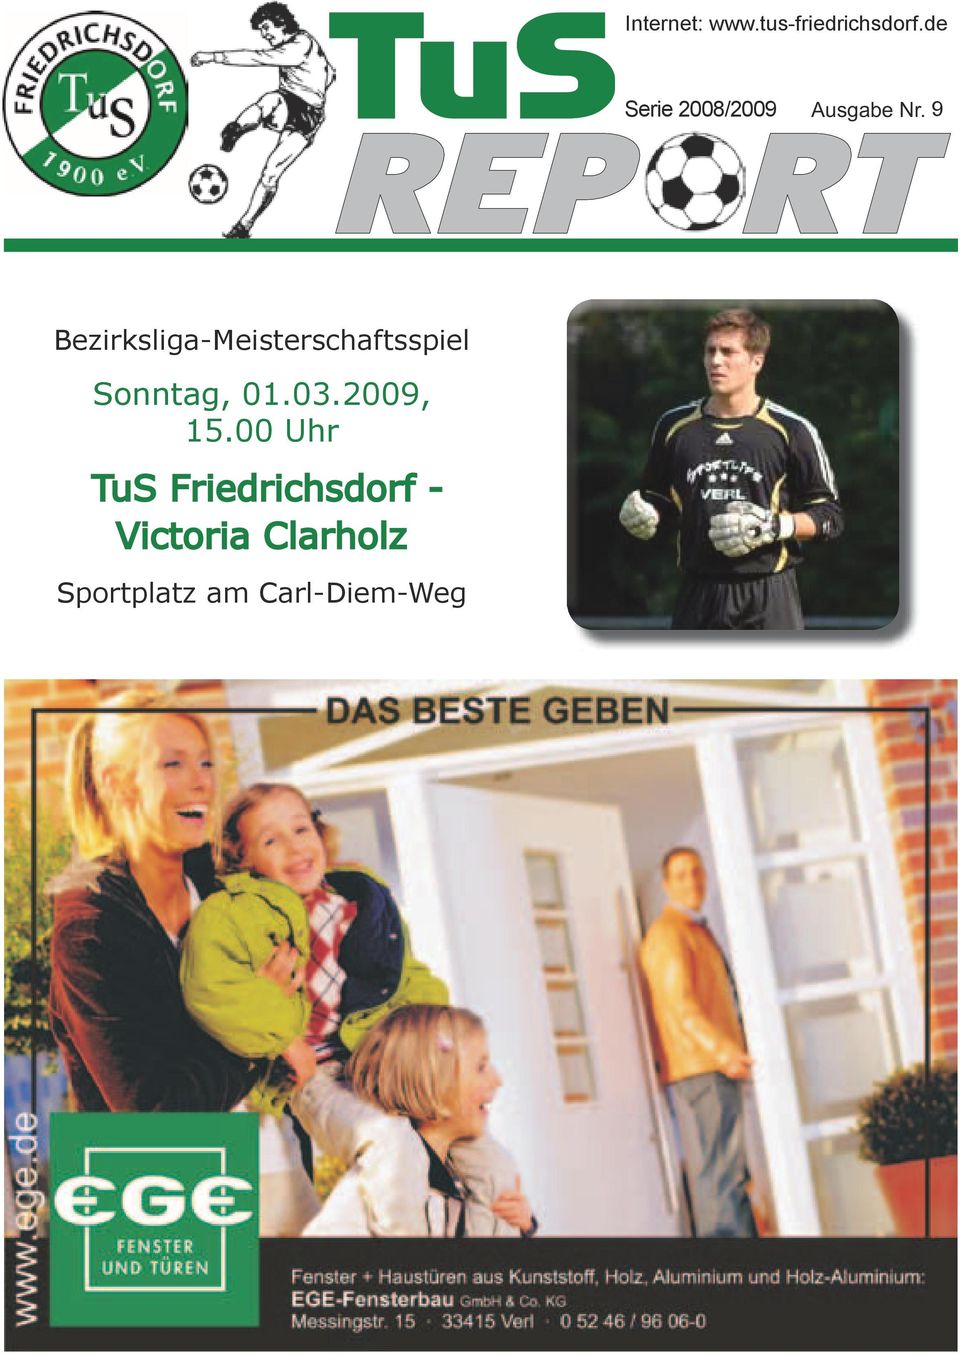 9 REP RT Bezirksliga-Meisterschaftsspiel Sonntag, 01.03.